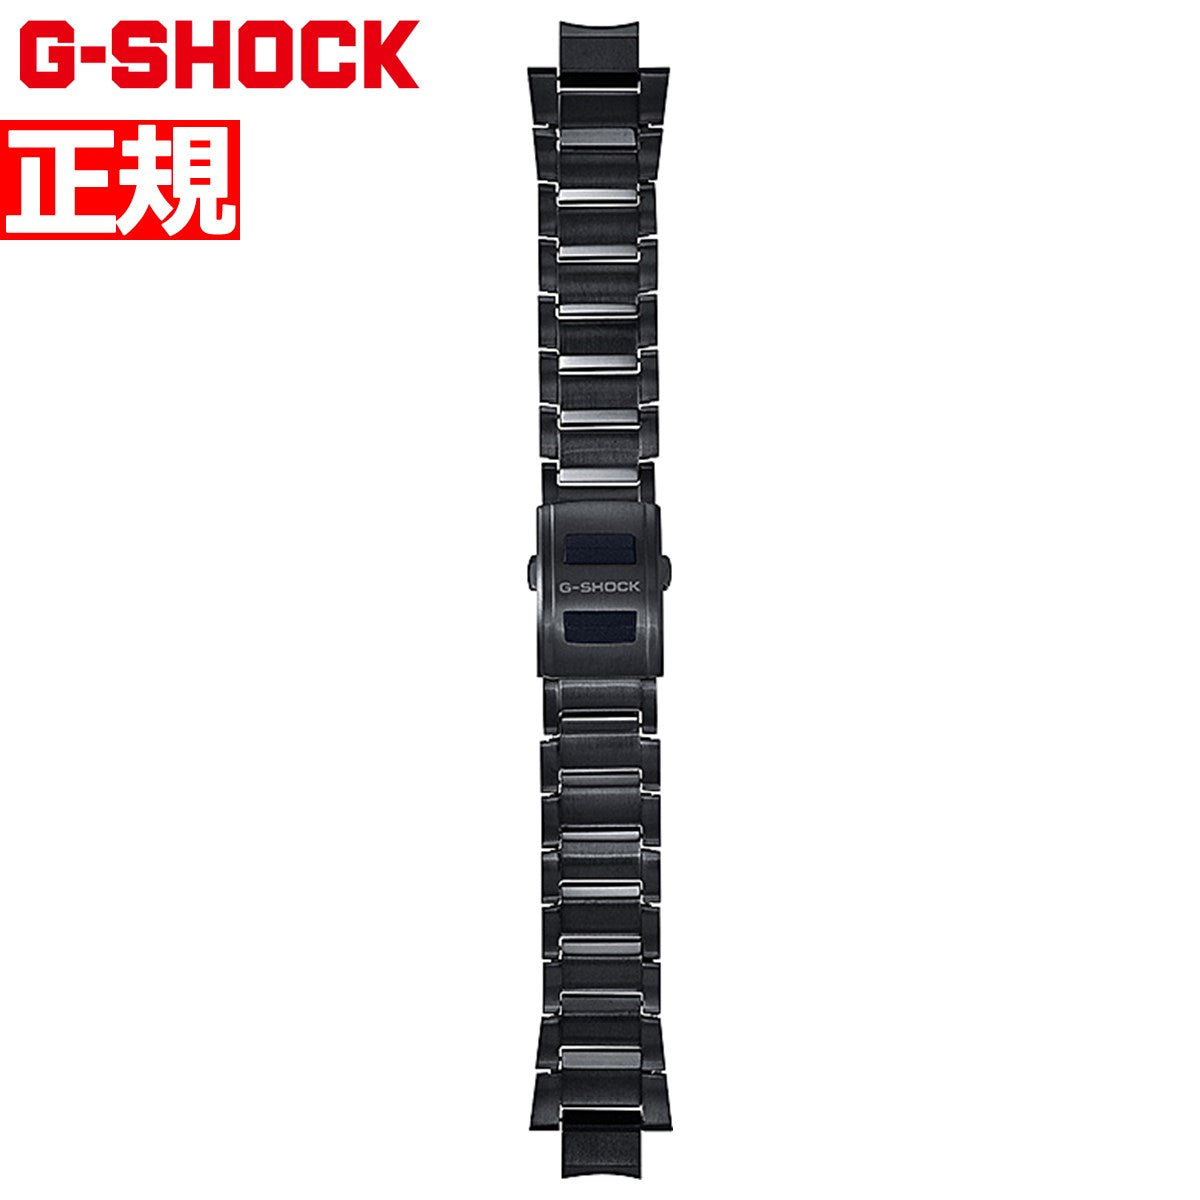 G-SHOCK MT-G B3000シリーズ用 ウォッチバンド BANDGS52D-1JR ワンプッシュ式 交換用バンド 替えバンド ベルト レイヤーコンポジット ブラックIP ステンレス CASIO カシオ